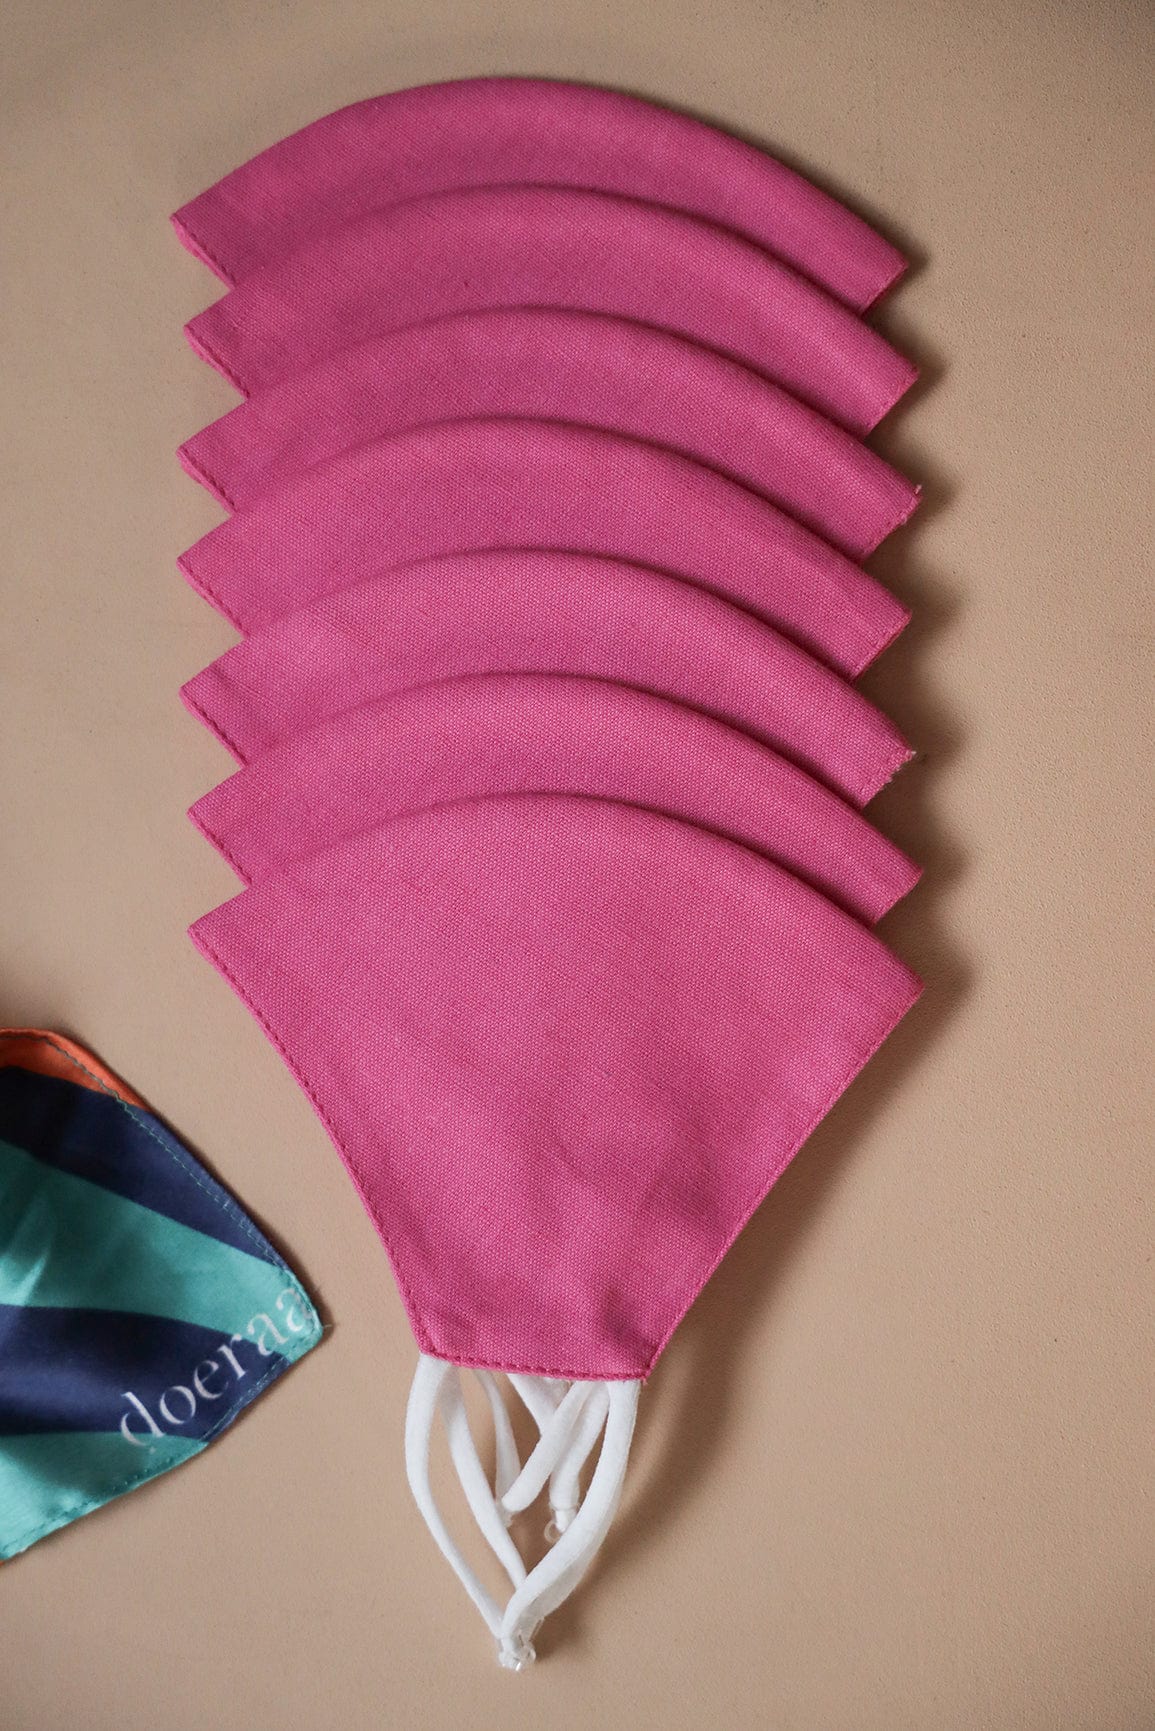 doeraa Masks Pink Soft Adjustable Triple Layer Cotton Linen Masks: Pack of 7